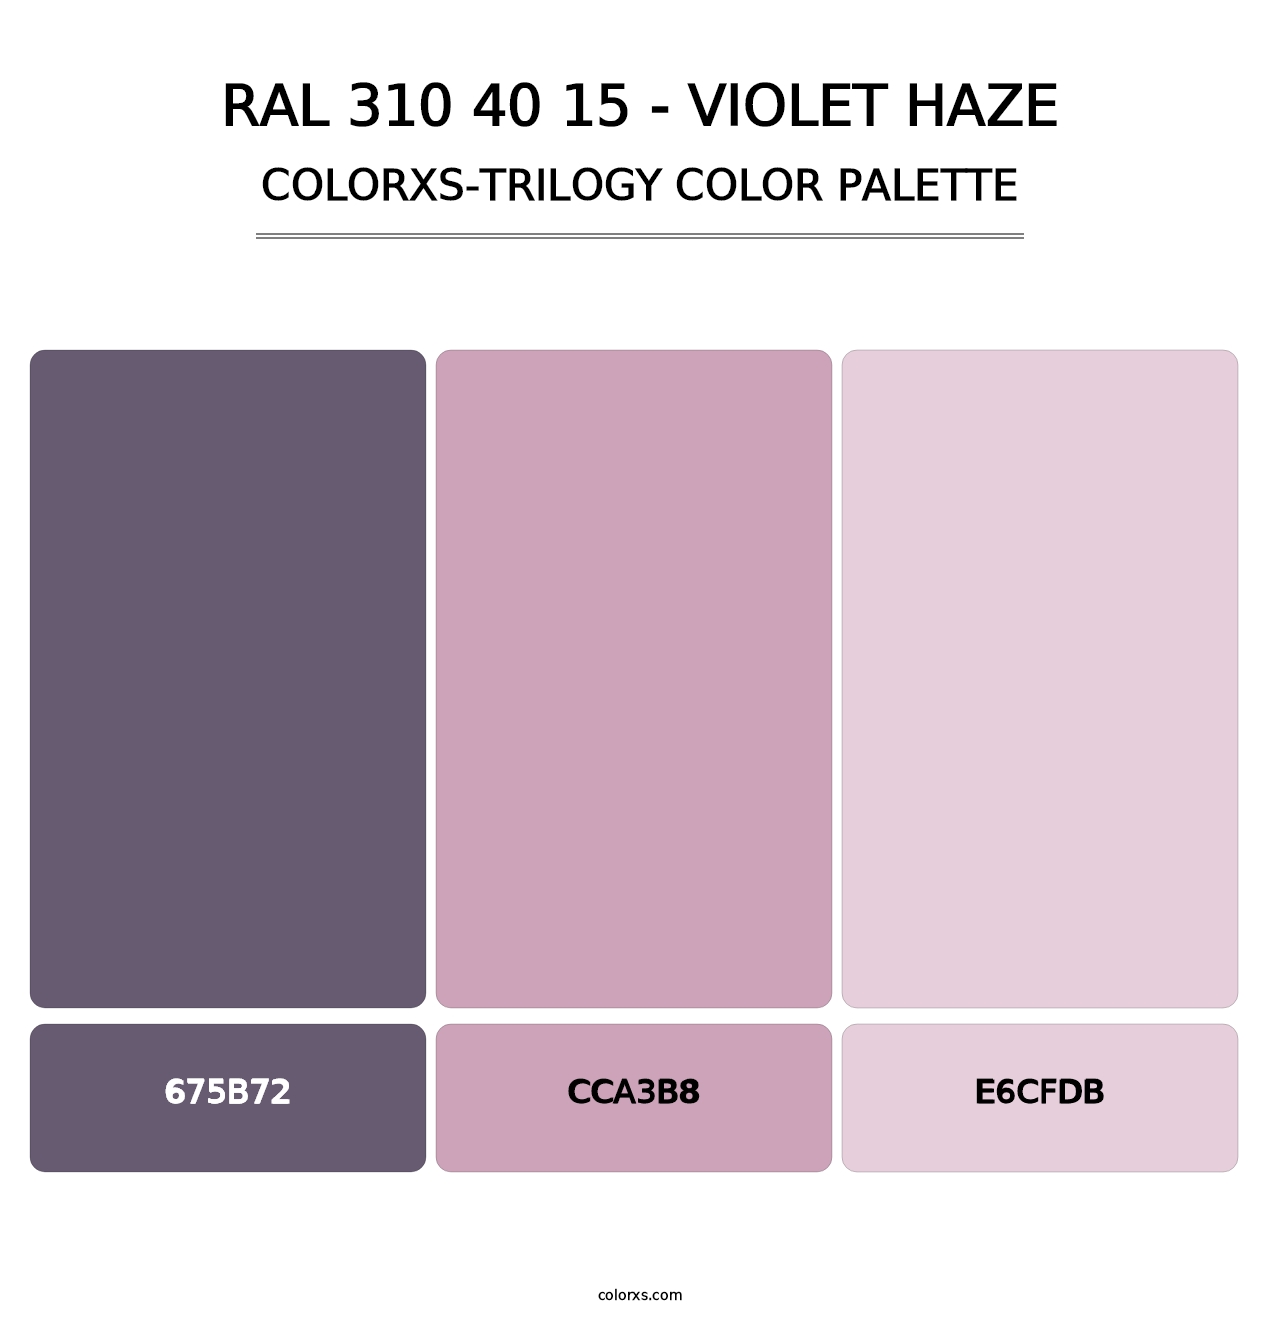 RAL 310 40 15 - Violet Haze - Colorxs Trilogy Palette